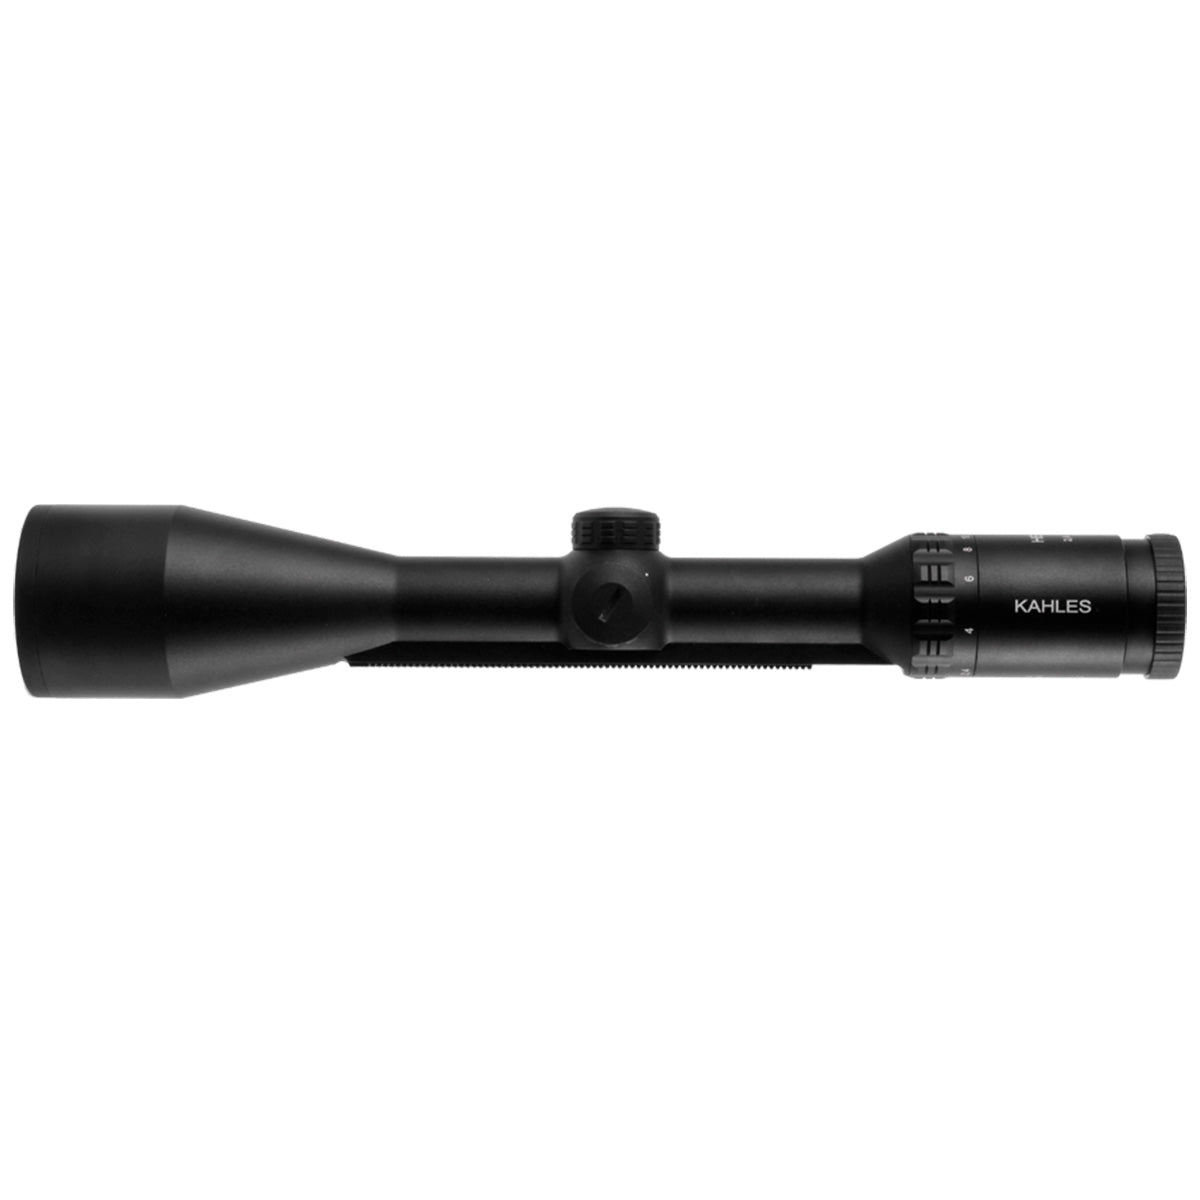 Kahles Helia 2,4-12x56i Abs. G4B Illuminated Scope rifle scope